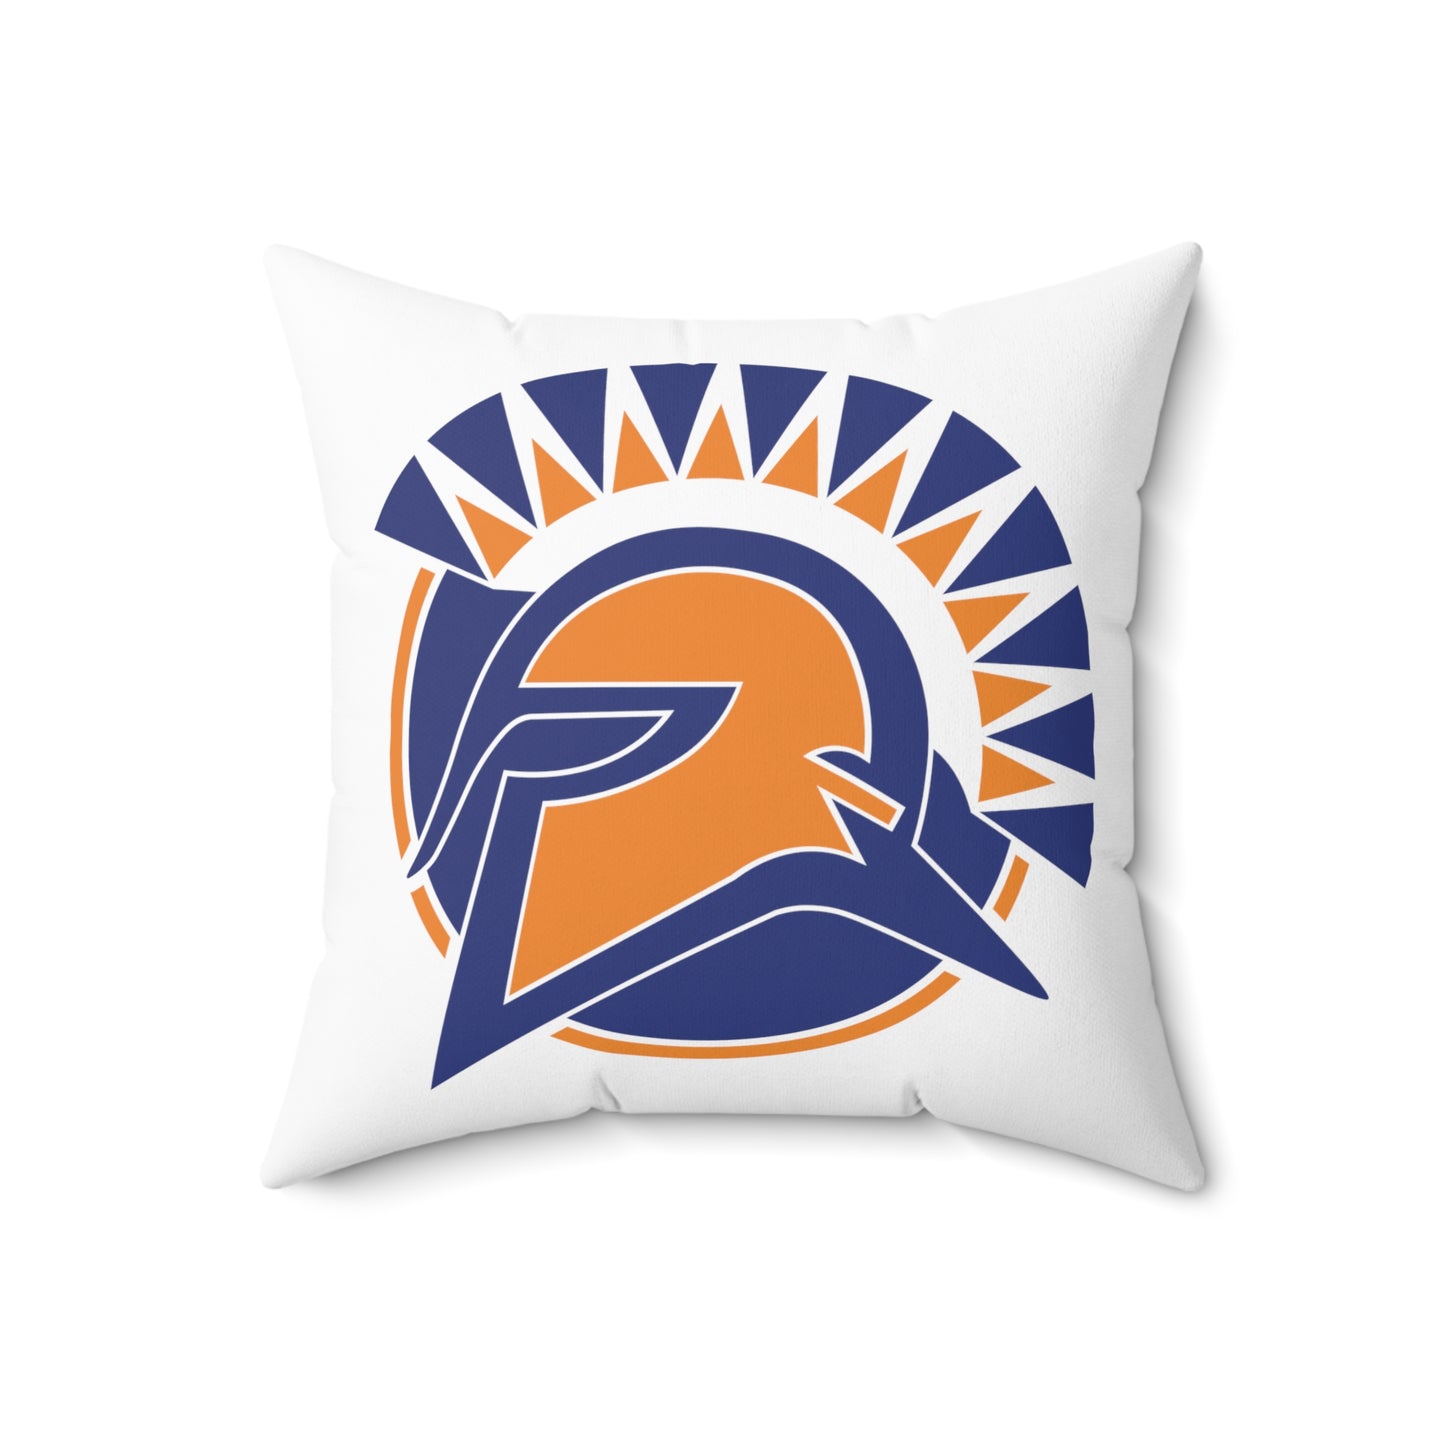 7L Band - Spun Polyester Square Pillow